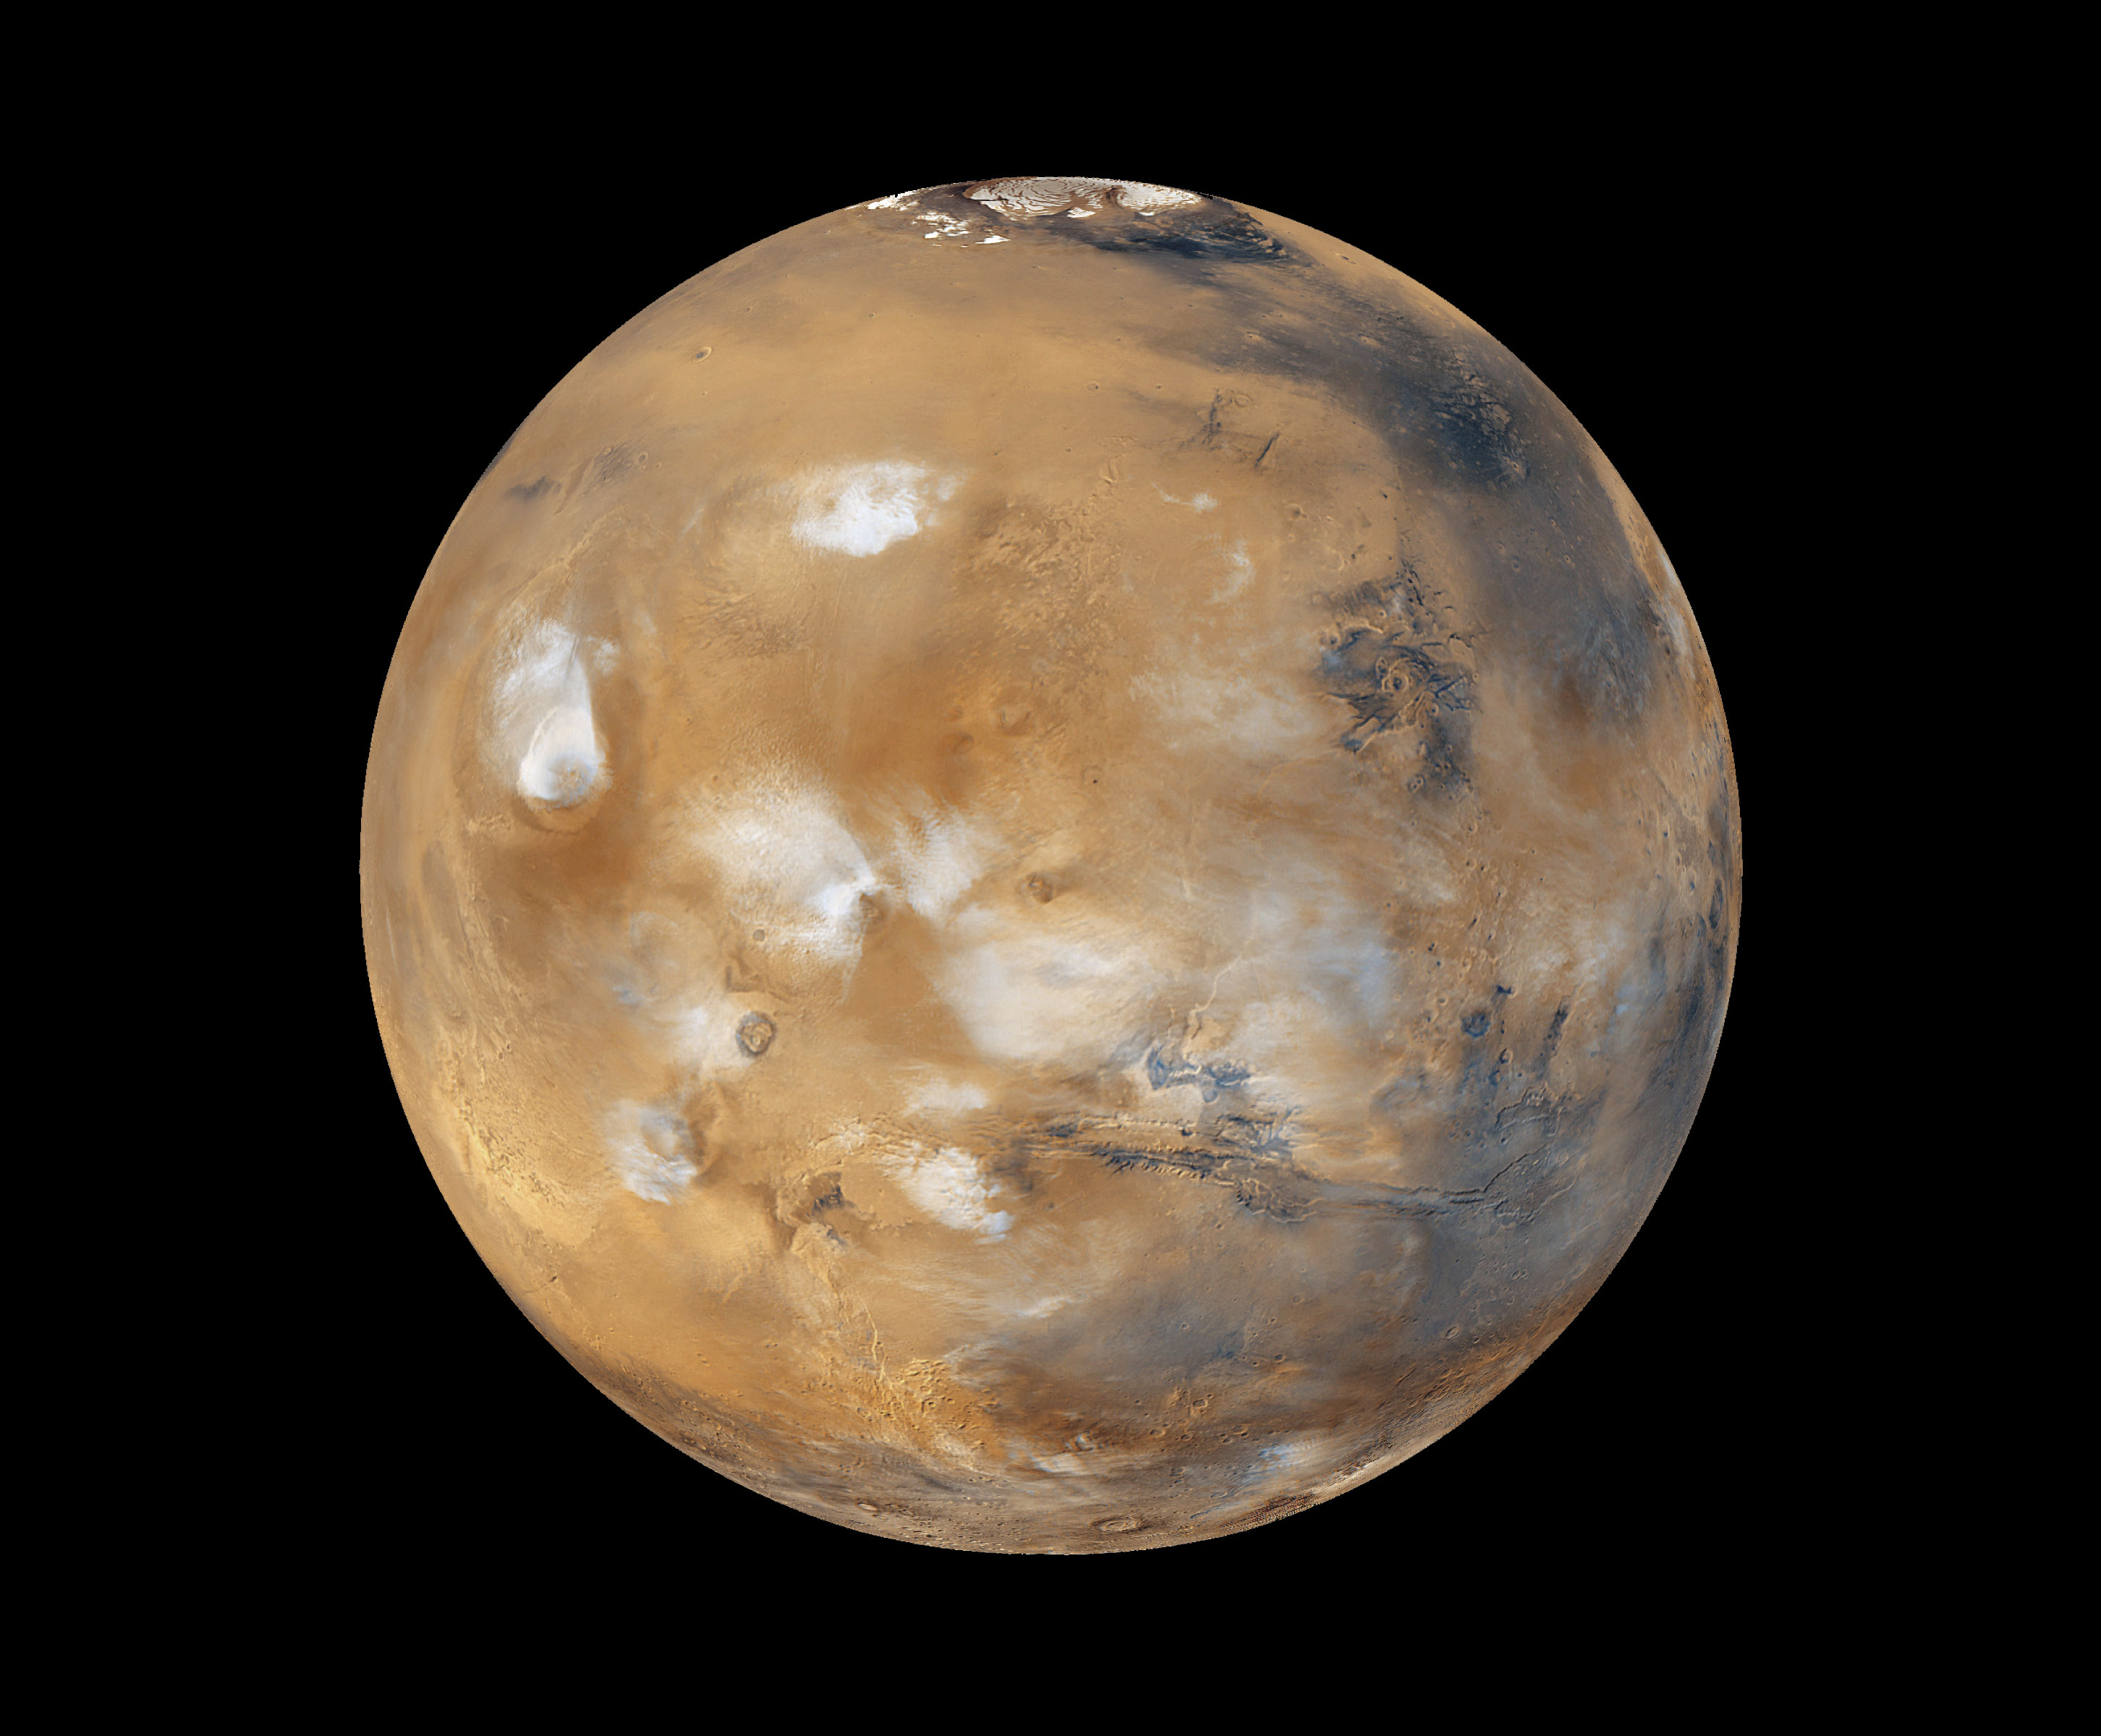 Компанията ”Mars One” е била регистрирана в Холандия през юни 2011 година само с един сътрудник